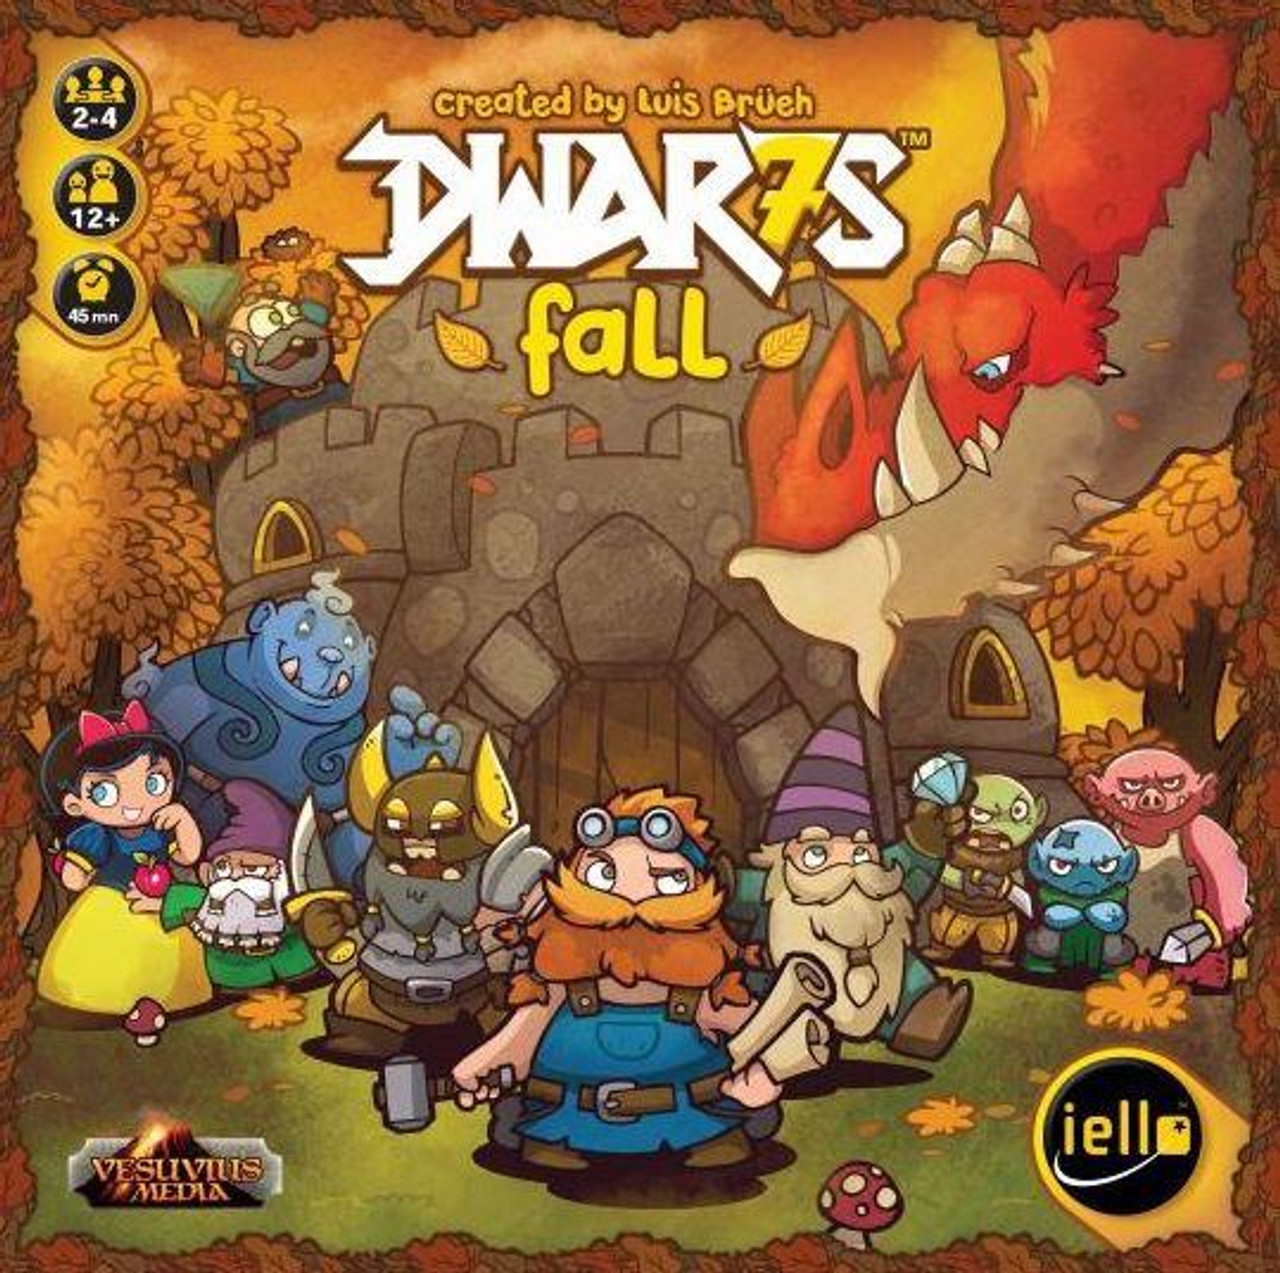 Dwar7s Fall - IEL51797